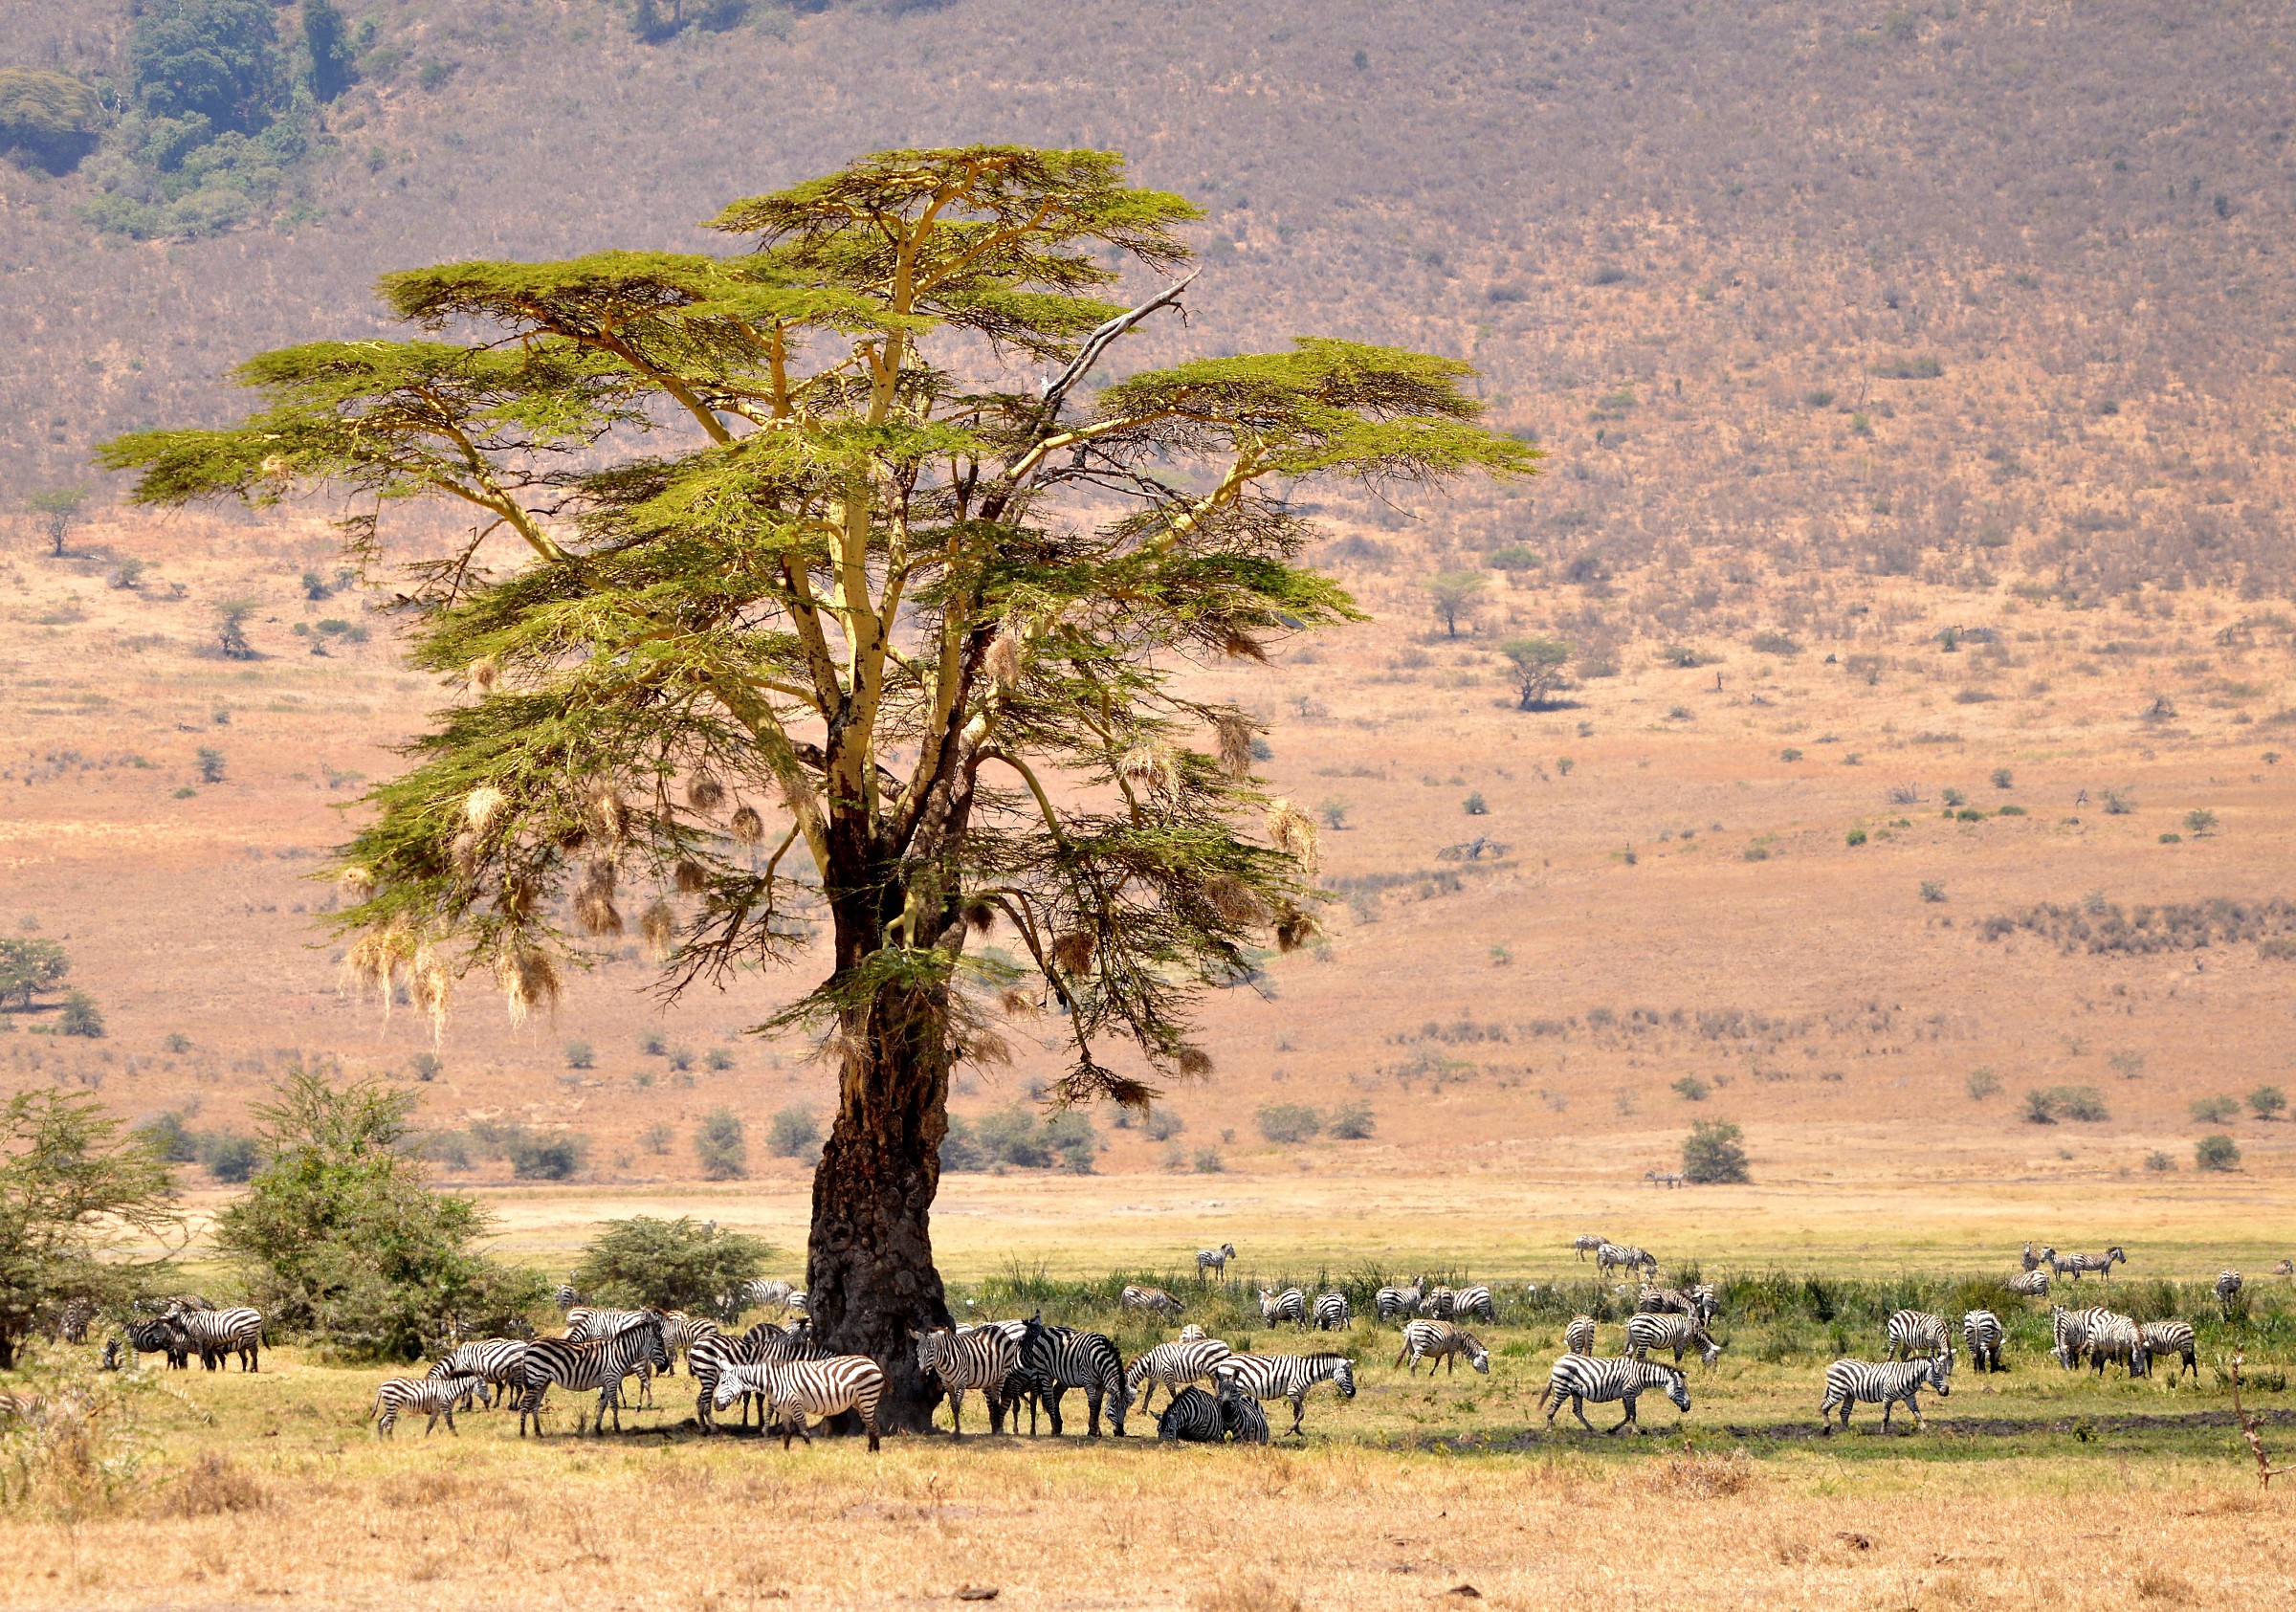 The tree of zebras...